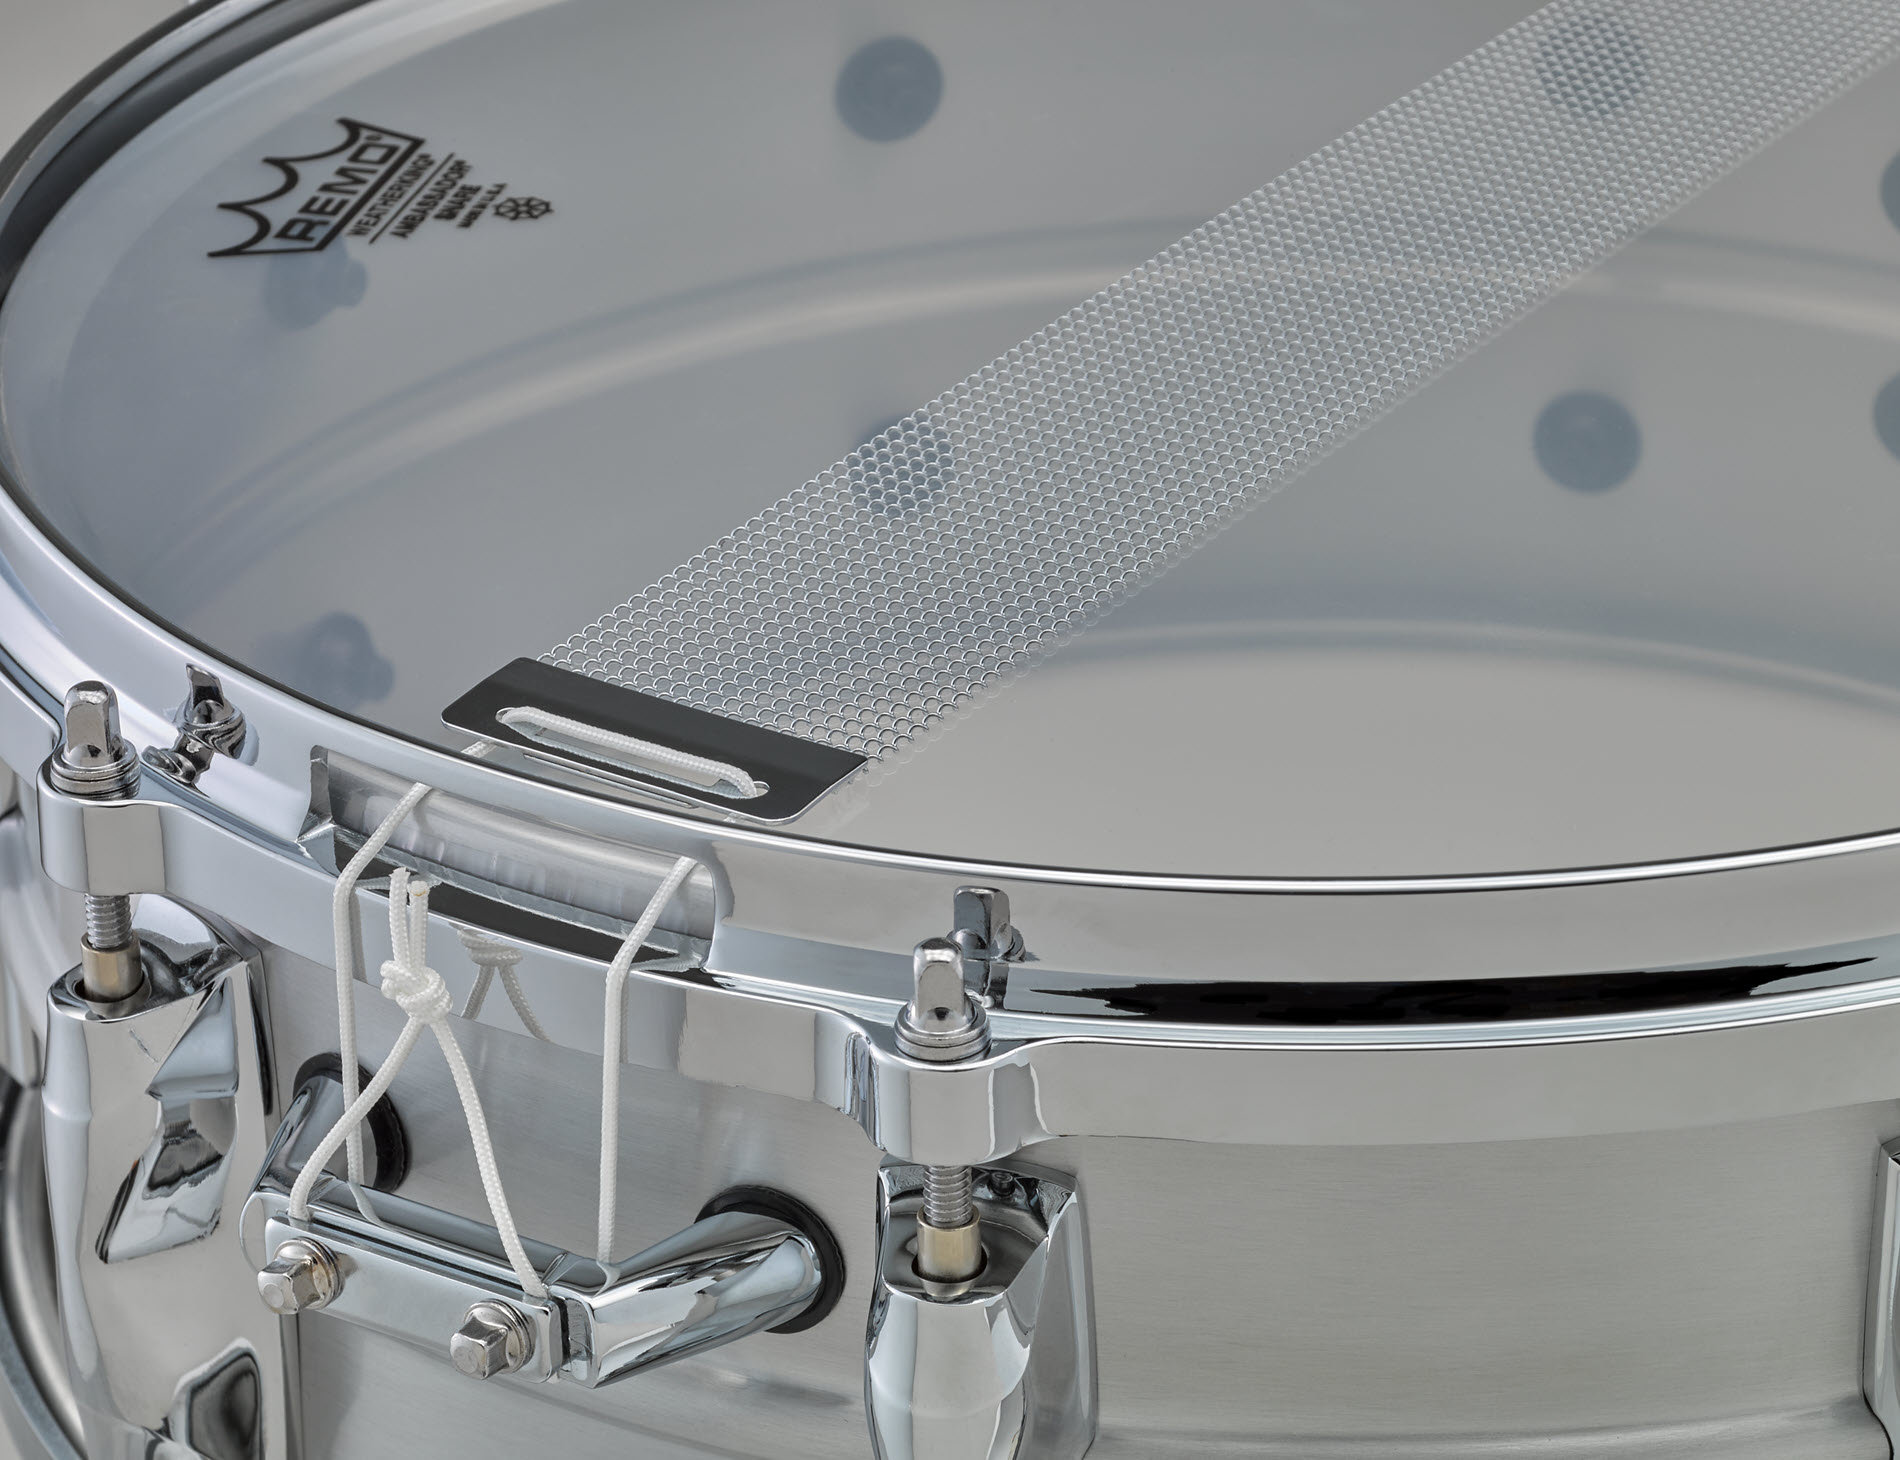 Closeup of snare drum.